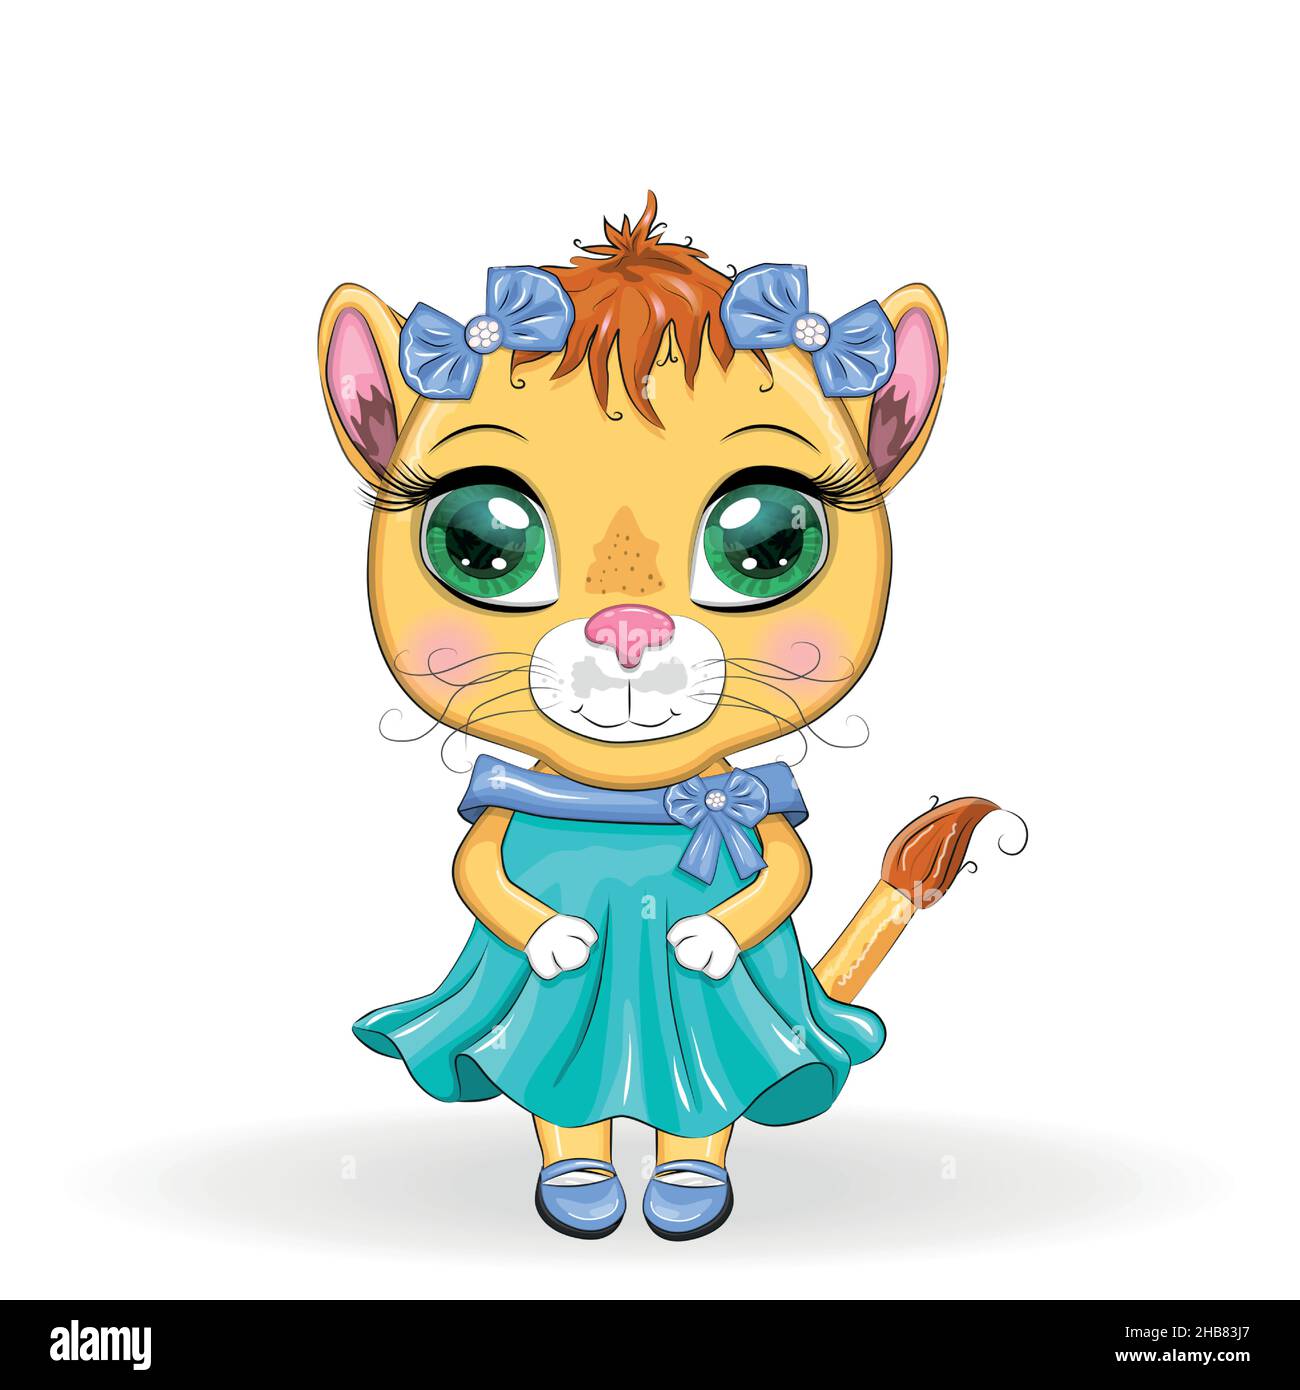 Cartoon Löwin in einem schönen Kleid mit Schleifen und Blumen.  Mädchencharakter, wildes Tier mit menschlichen Zügen Stock-Vektorgrafik -  Alamy